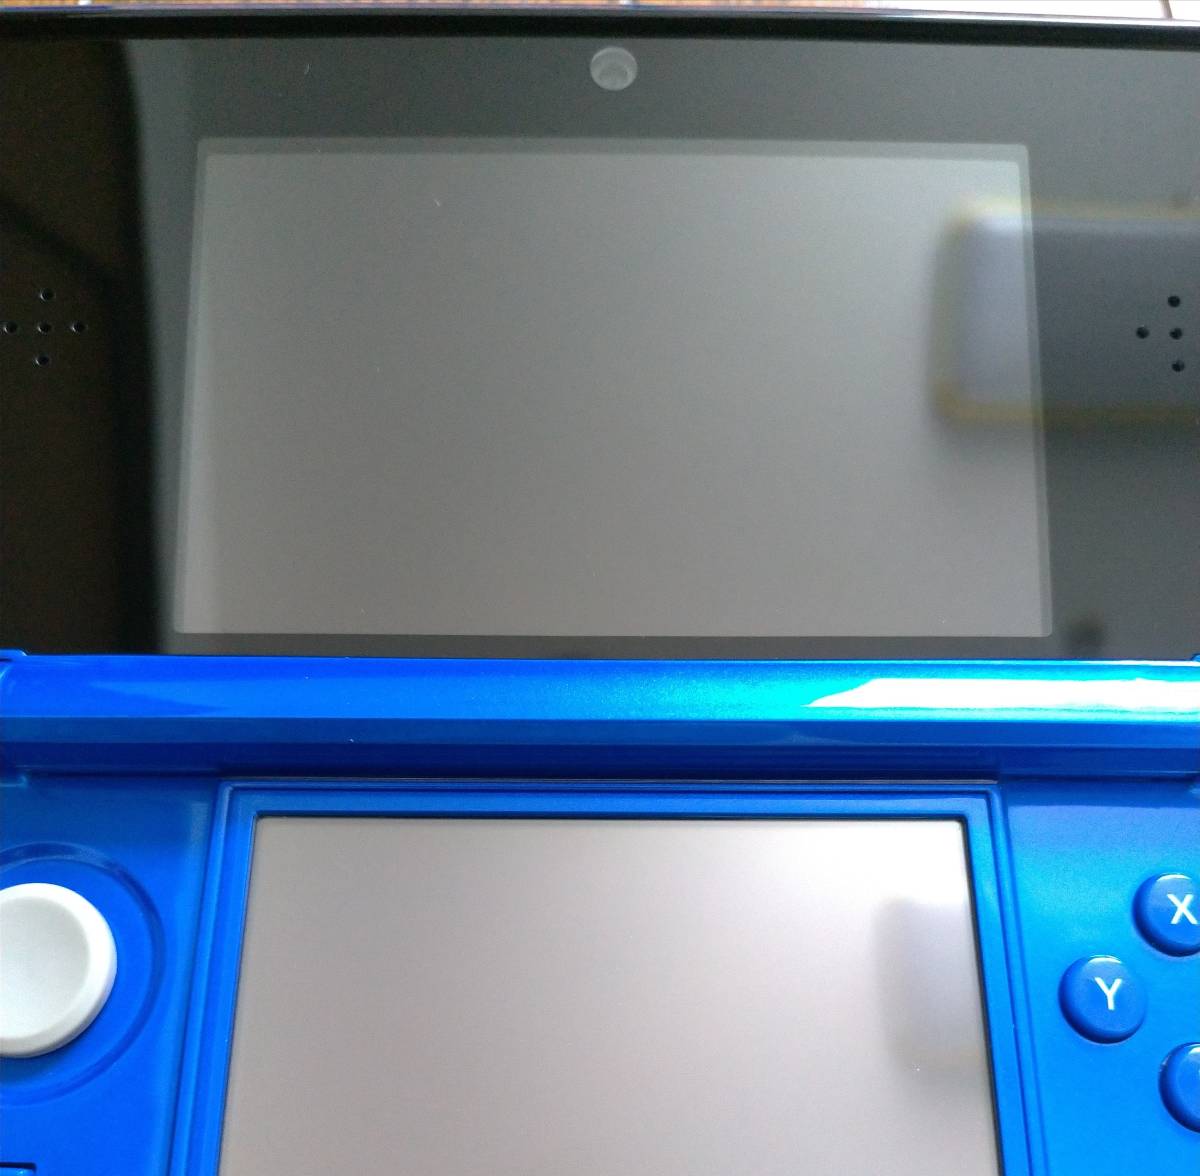 ニンテンドー3DS NINTENDO 3DS コバルトブルー 中古美品 全体綺麗 上下画面傷なし 不具合なし タッチペン SDカード（2GB） 送料無料